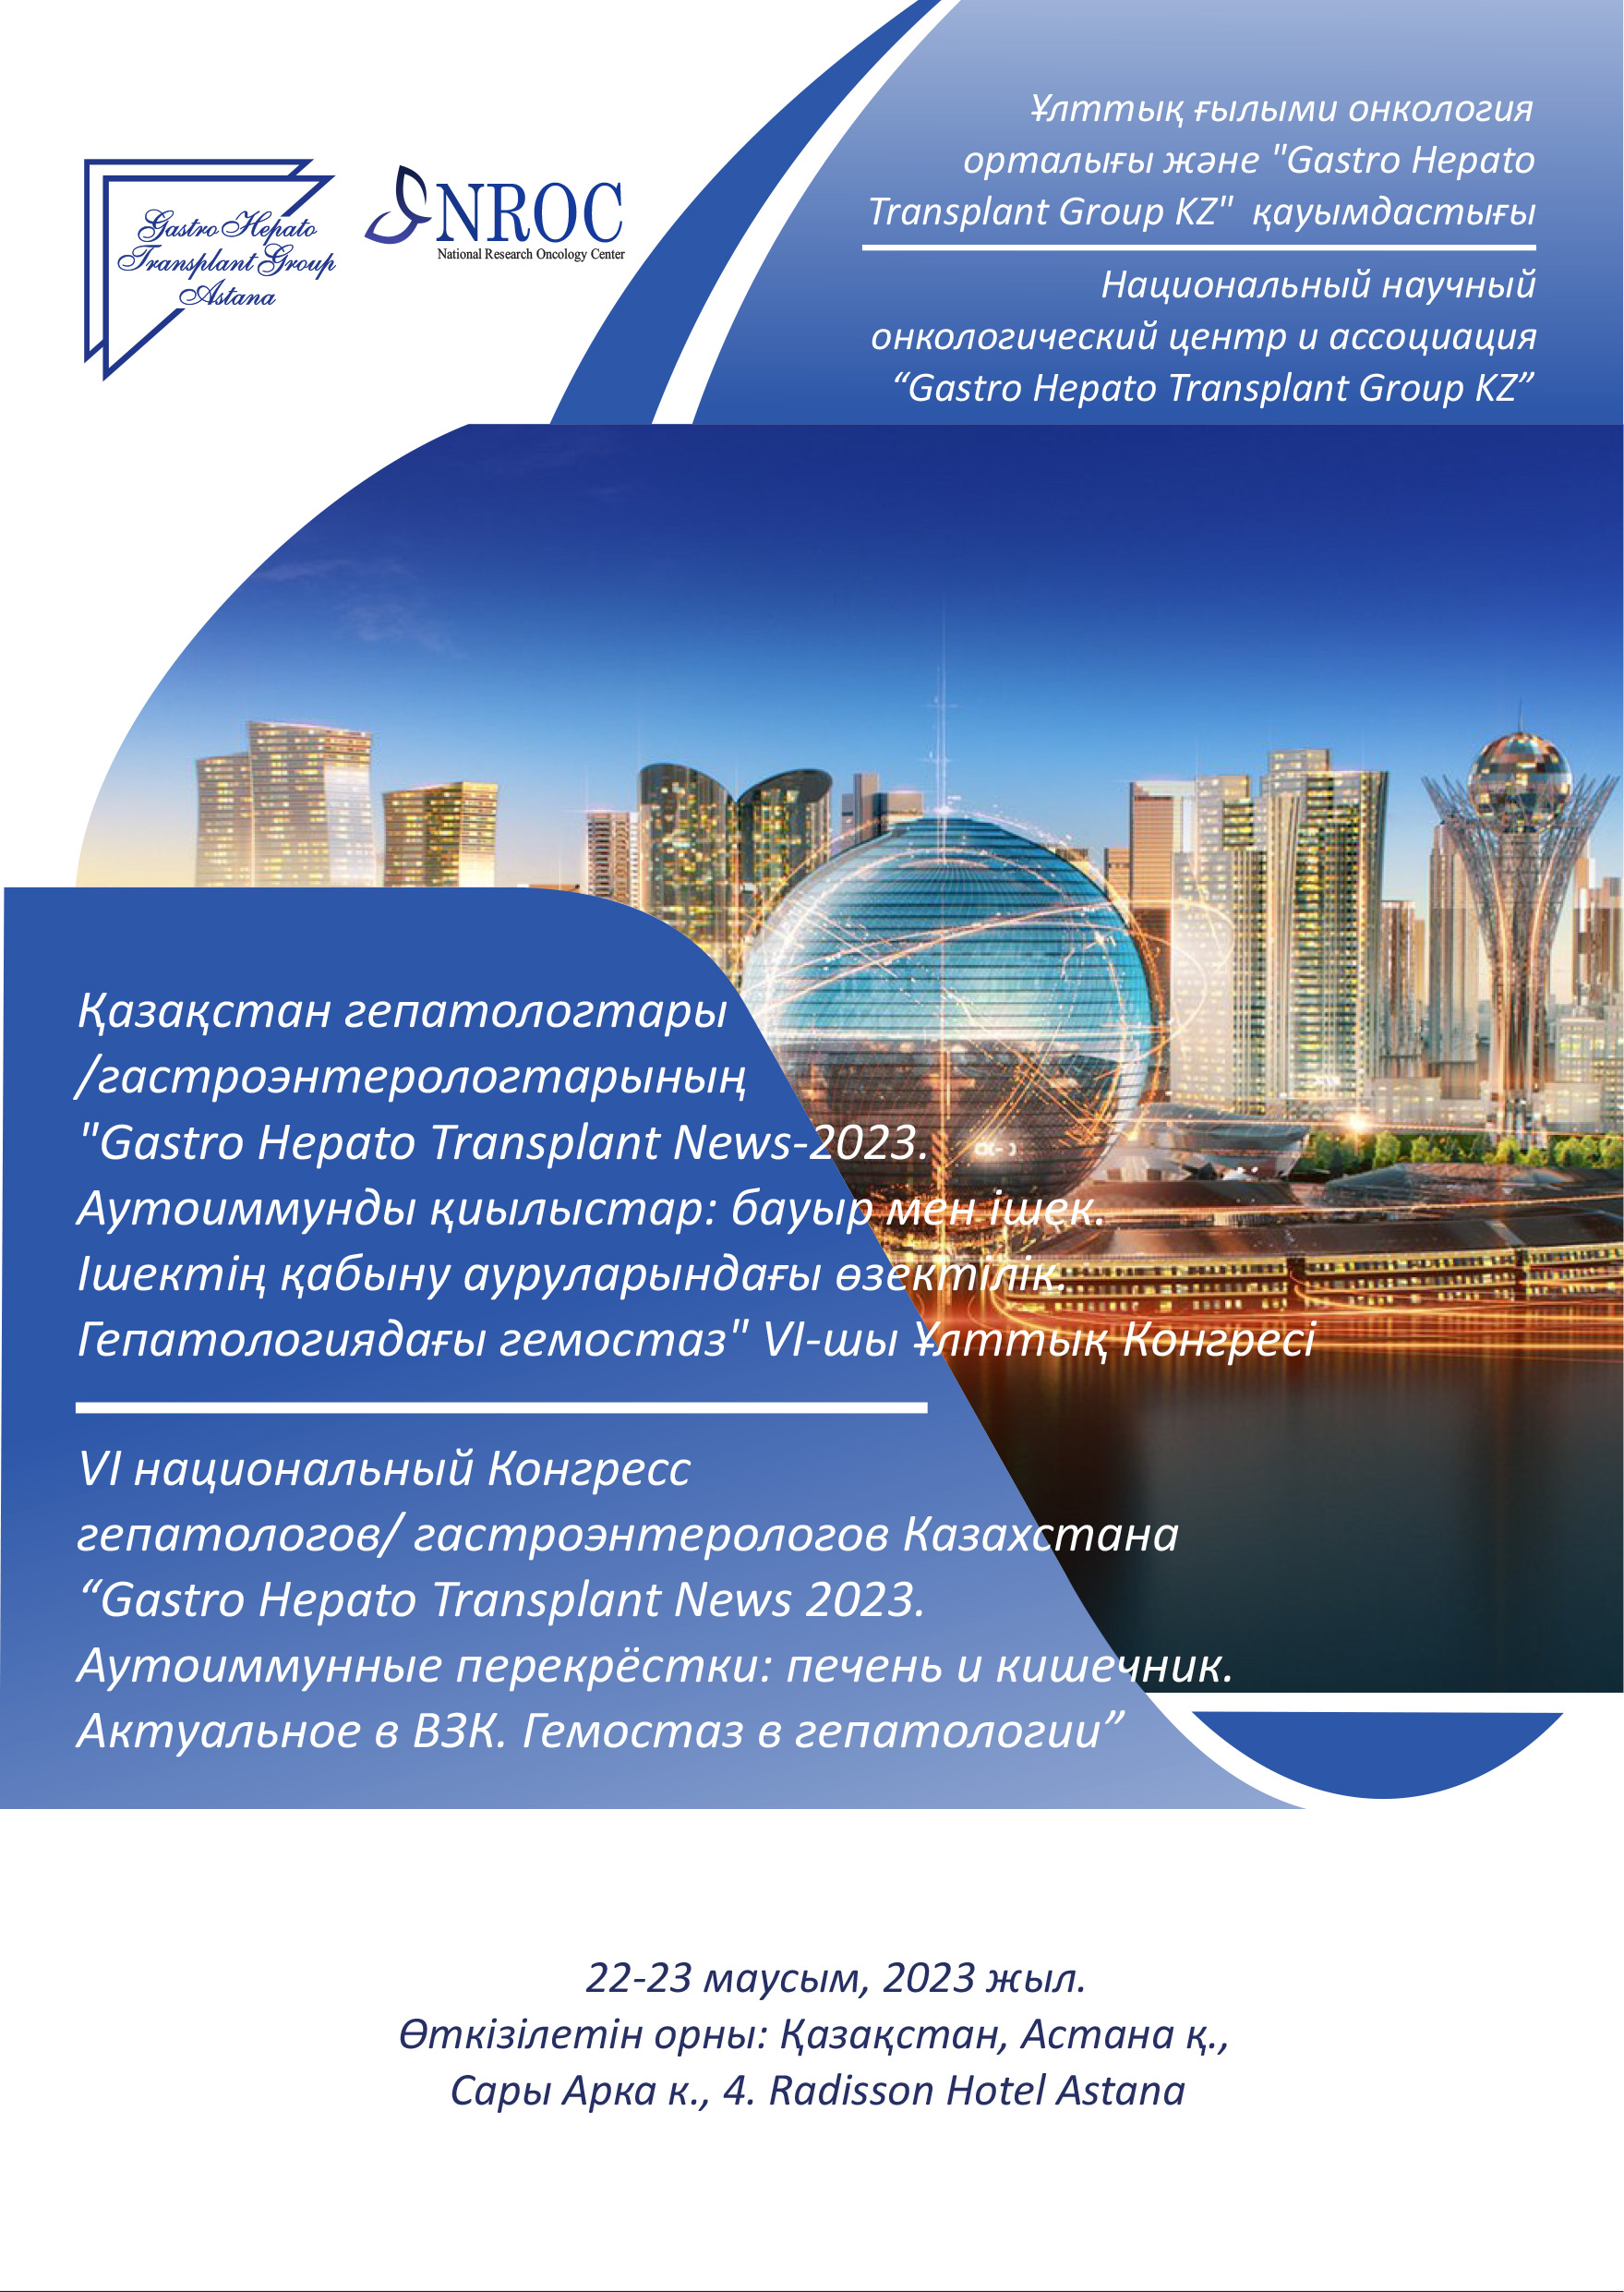 22-23 июня 2023 года в городе Астана пройдет VI Национальный Конгресс гепатологов/гастроэнтерологов Казахстана